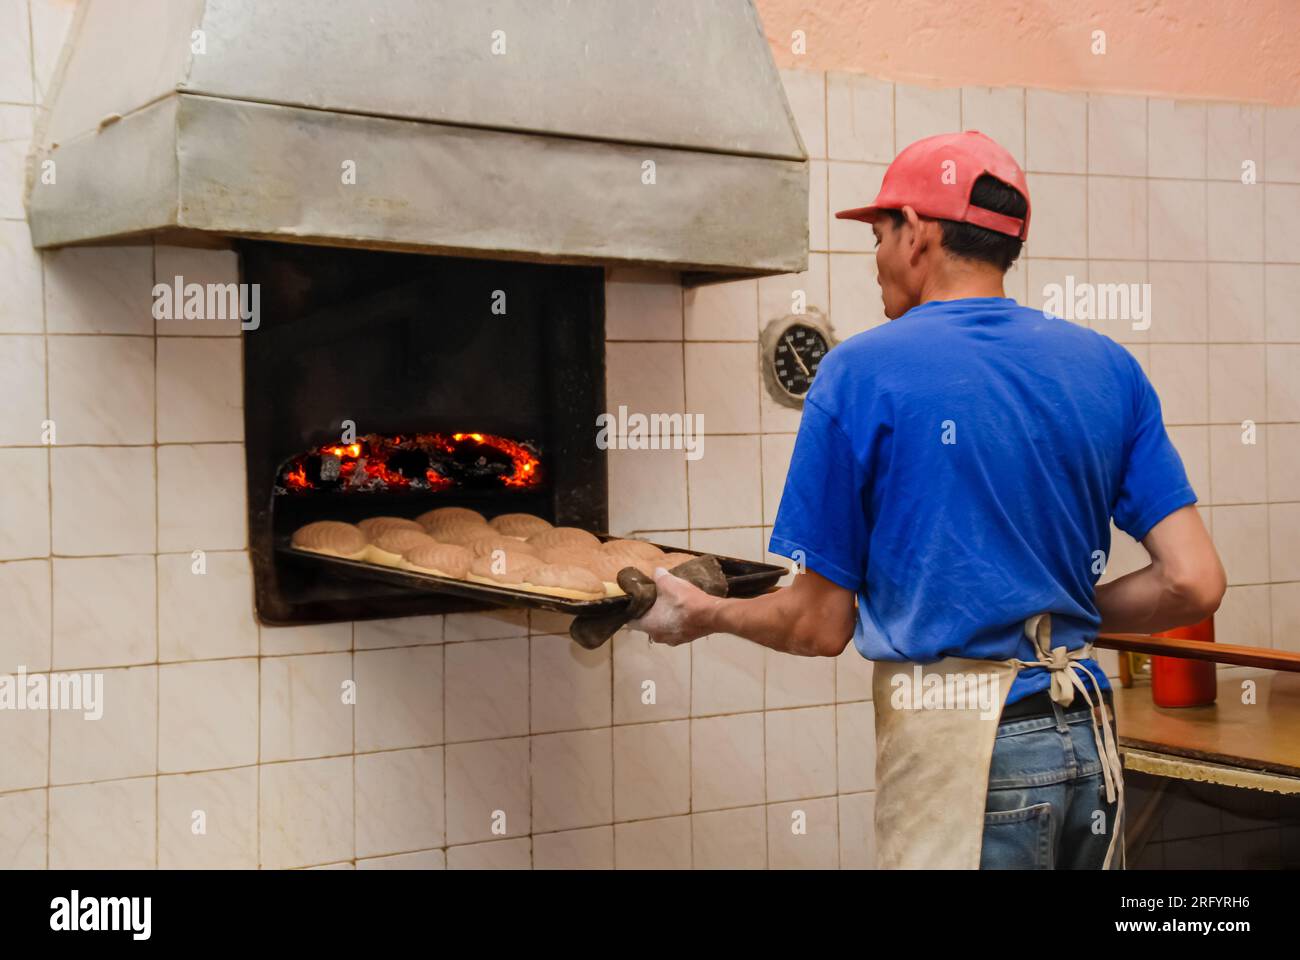 Dans une boulangerie mexicaine traditionnelle, le dos d'un boulanger est tourné alors qu'il récupère des conchas au chocolat fraîchement cuit dans le four. Son visage reste invisible, emph Banque D'Images